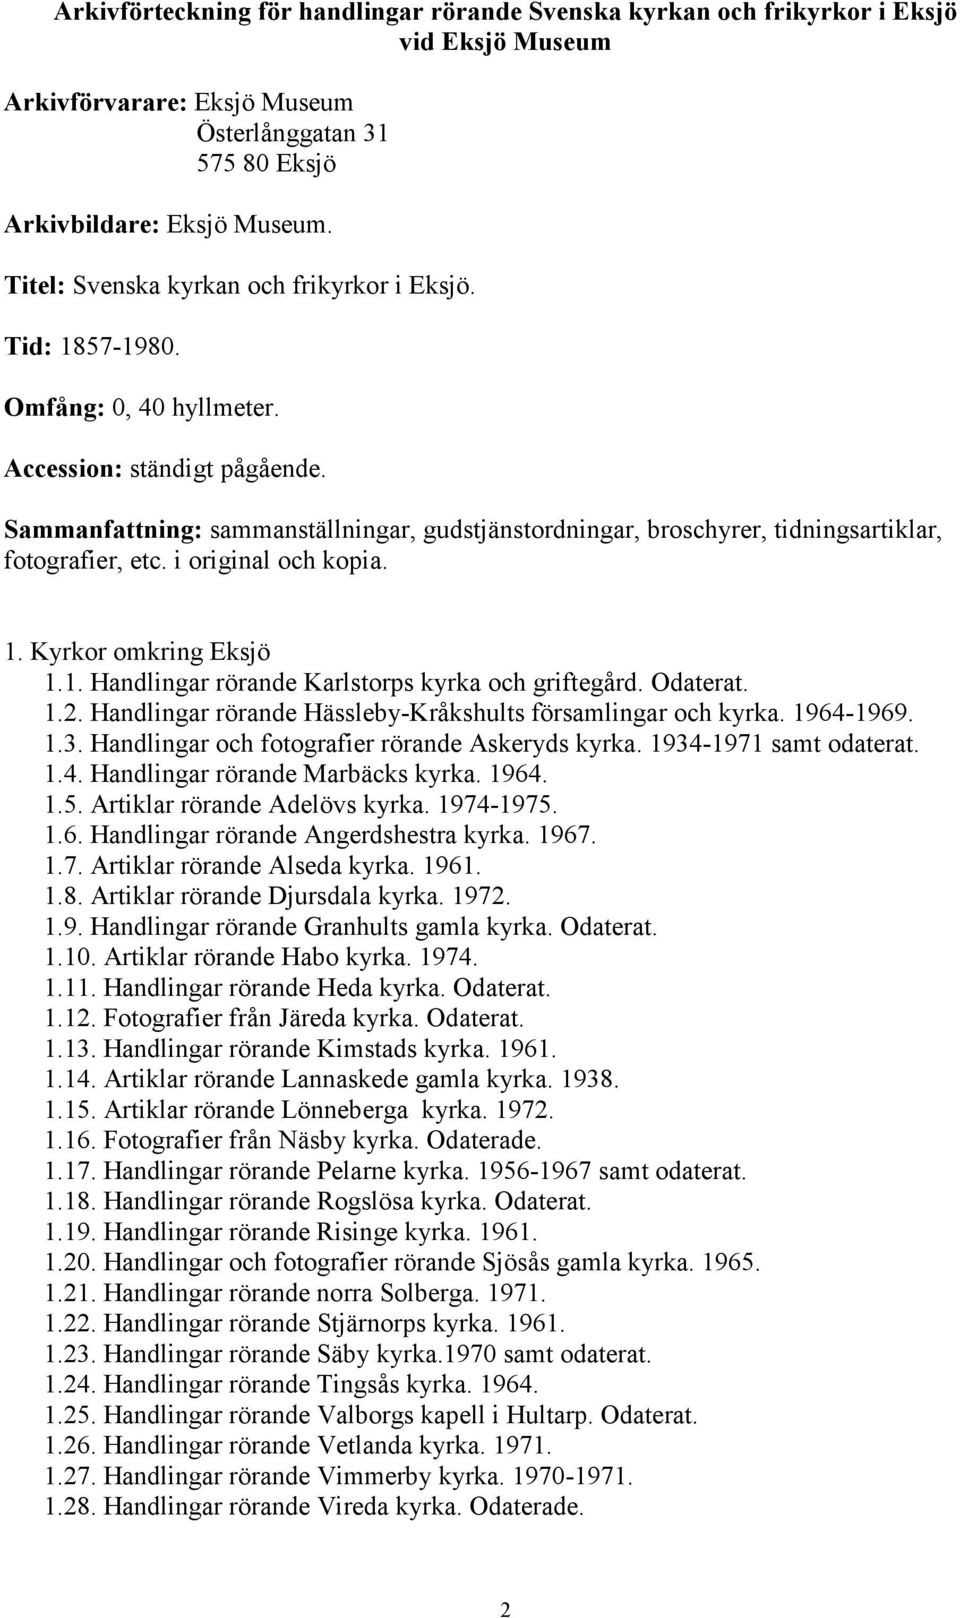 Odaterat. 1.2. Handlingar rörande Hässleby-Kråkshults församlingar och kyrka. 1964-1969. 1.3. Handlingar och fotografier rörande Askeryds kyrka. 1934-1971 samt odaterat. 1.4. Handlingar rörande Marbäcks kyrka.